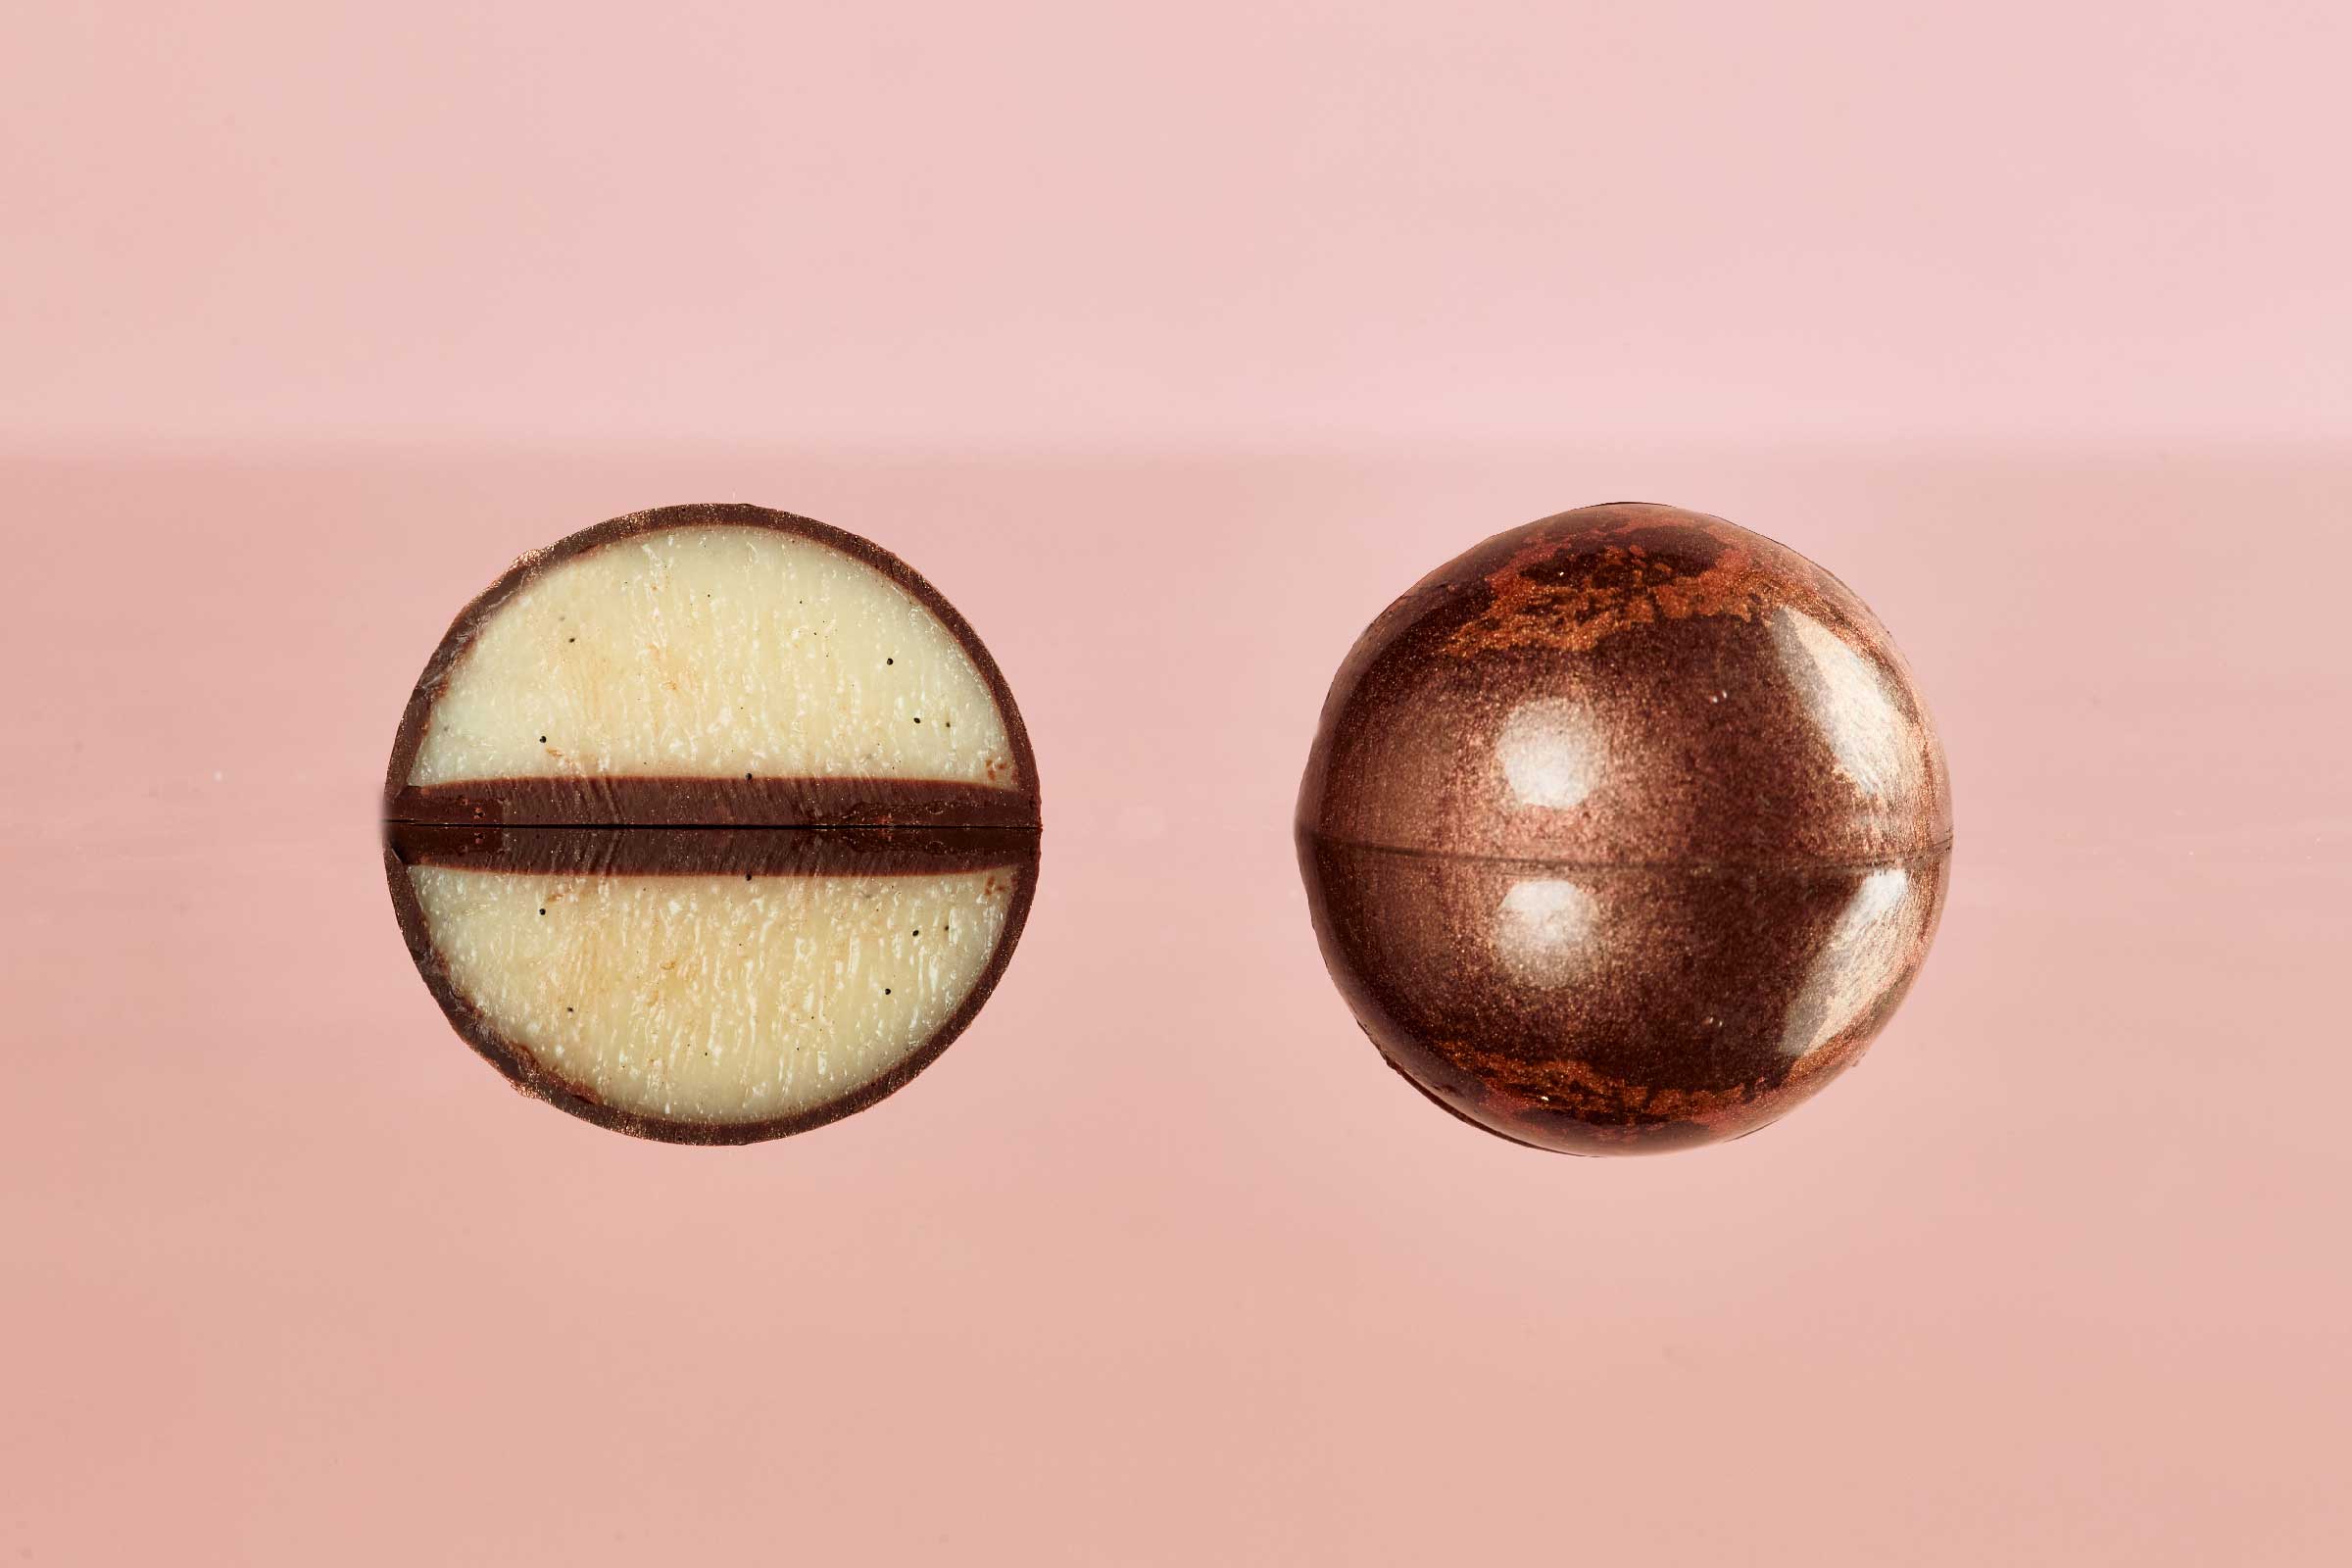 Marte: Ganache al cocco e vaniglia racchiuso in una camicia fondente.